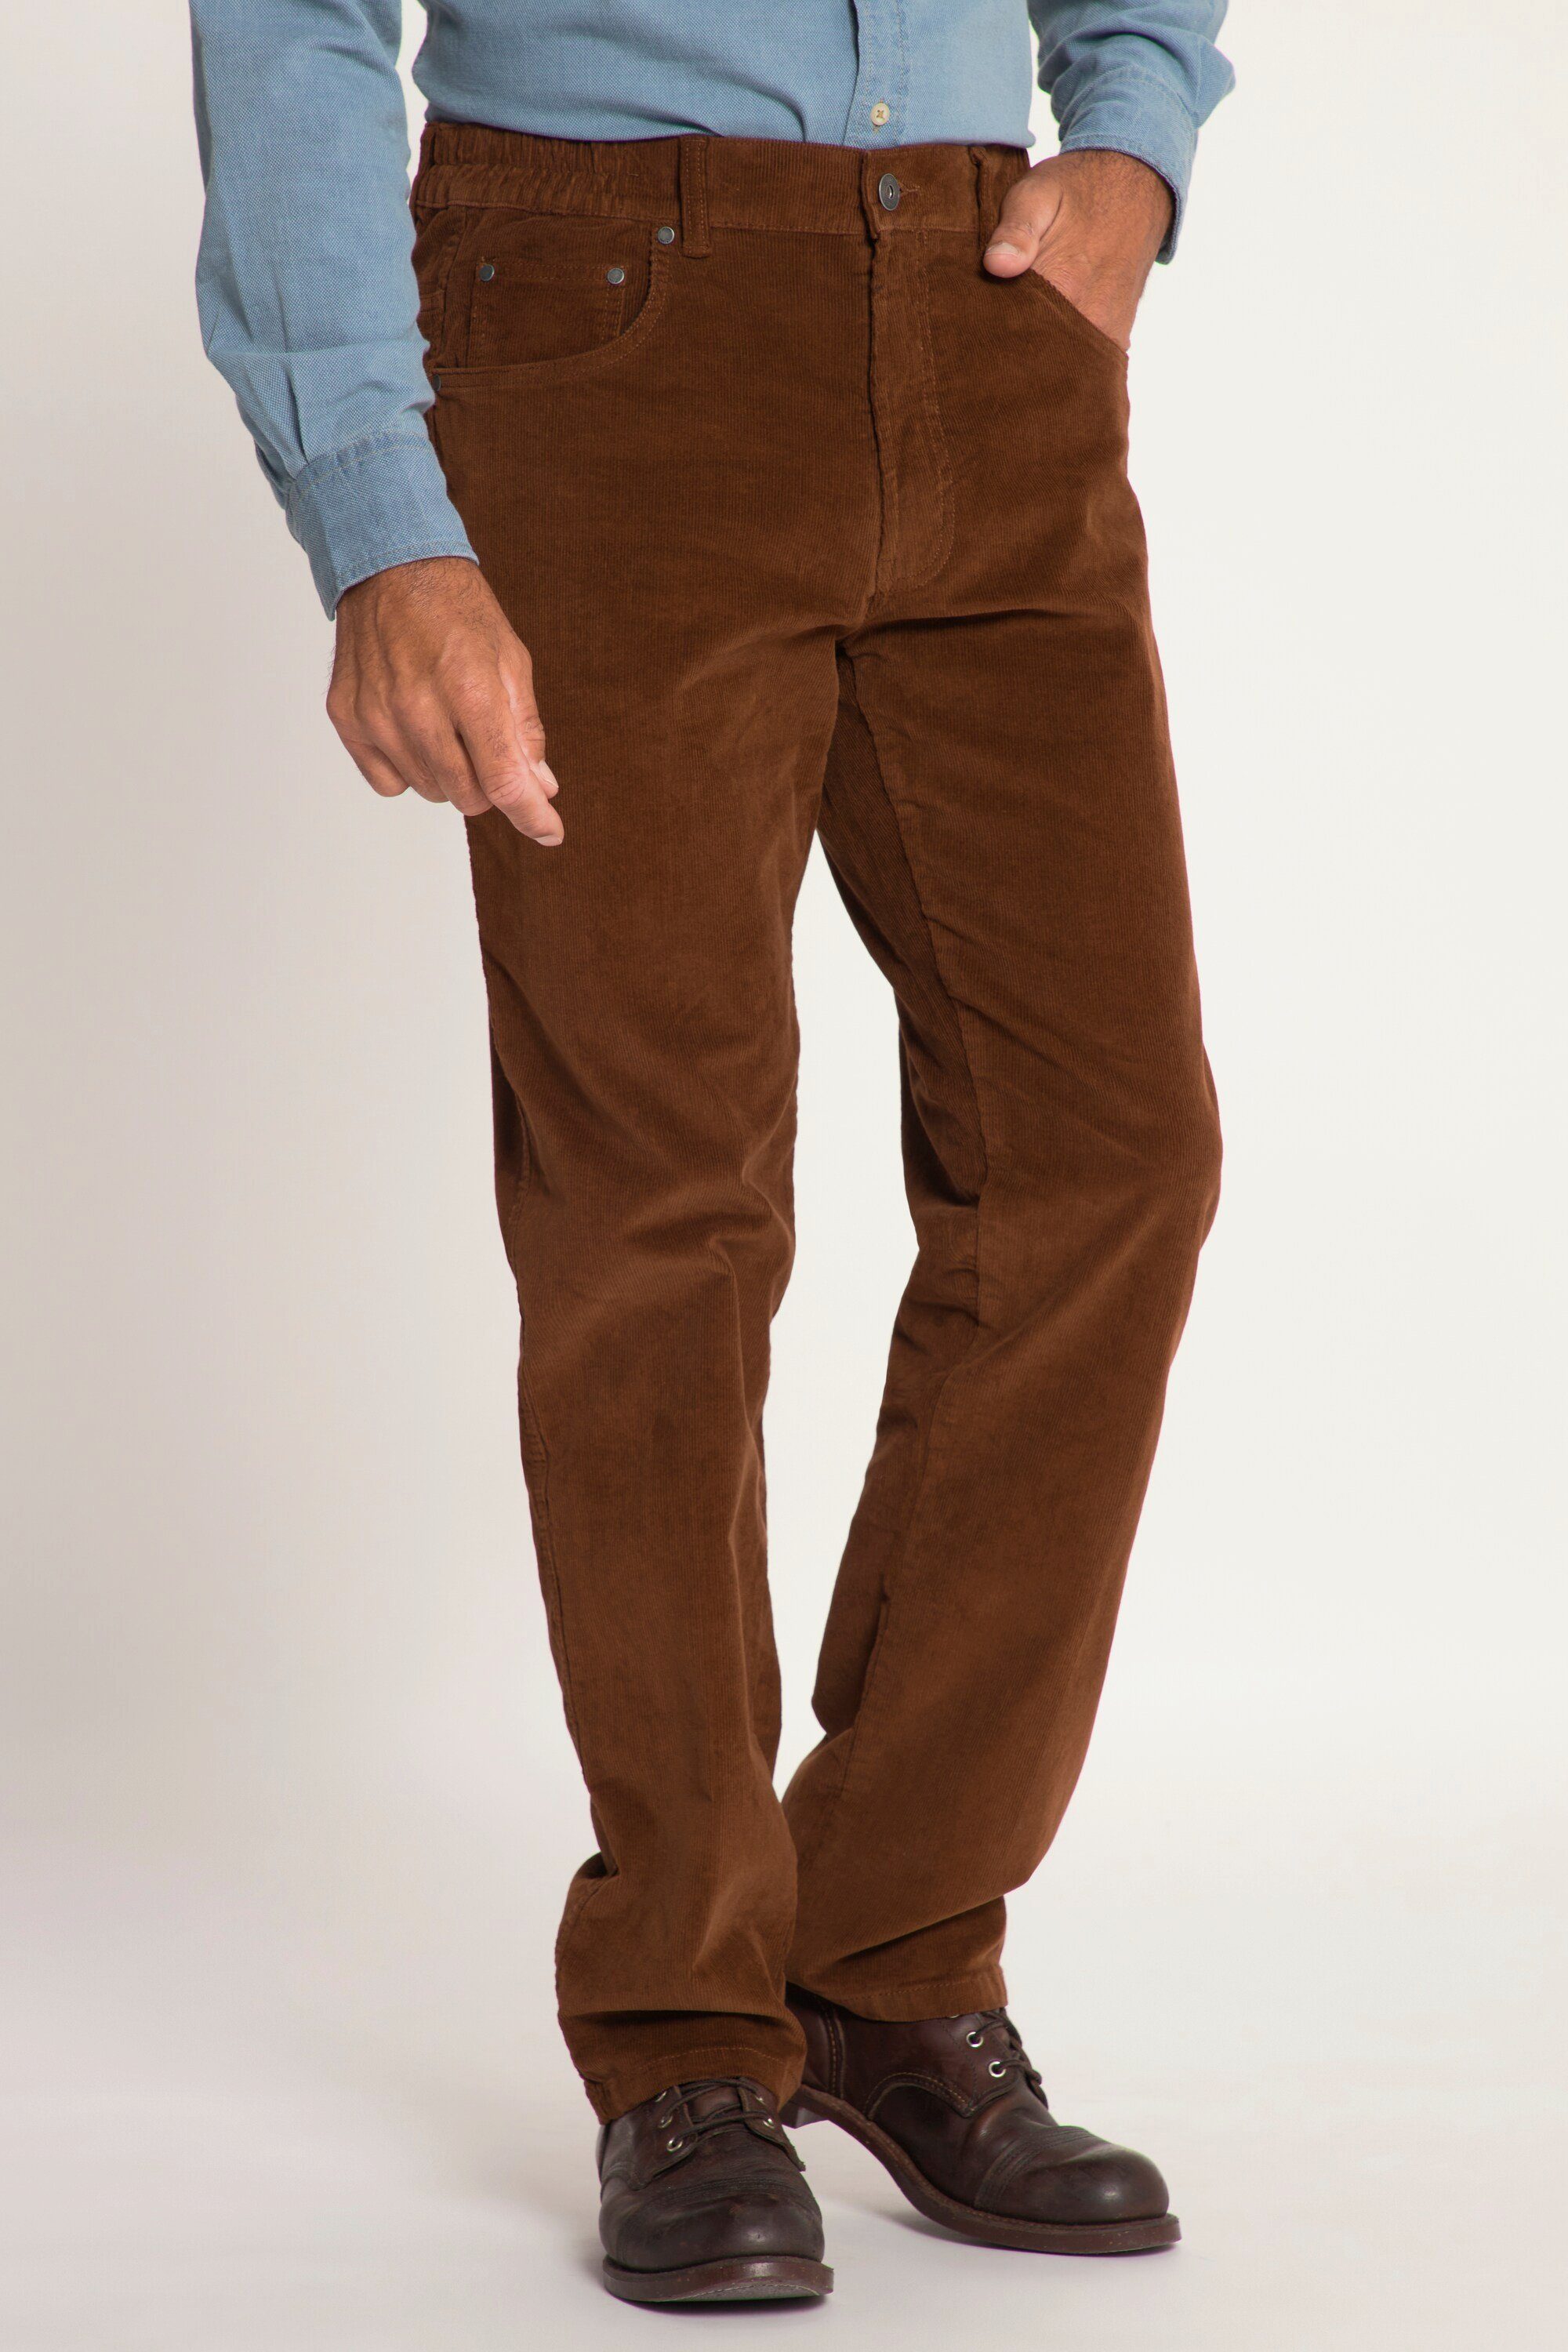 Cordhose 5-Pocket JP1880 elastischer 5-Pocket-Jeans seitlich Bund mahagonibraun